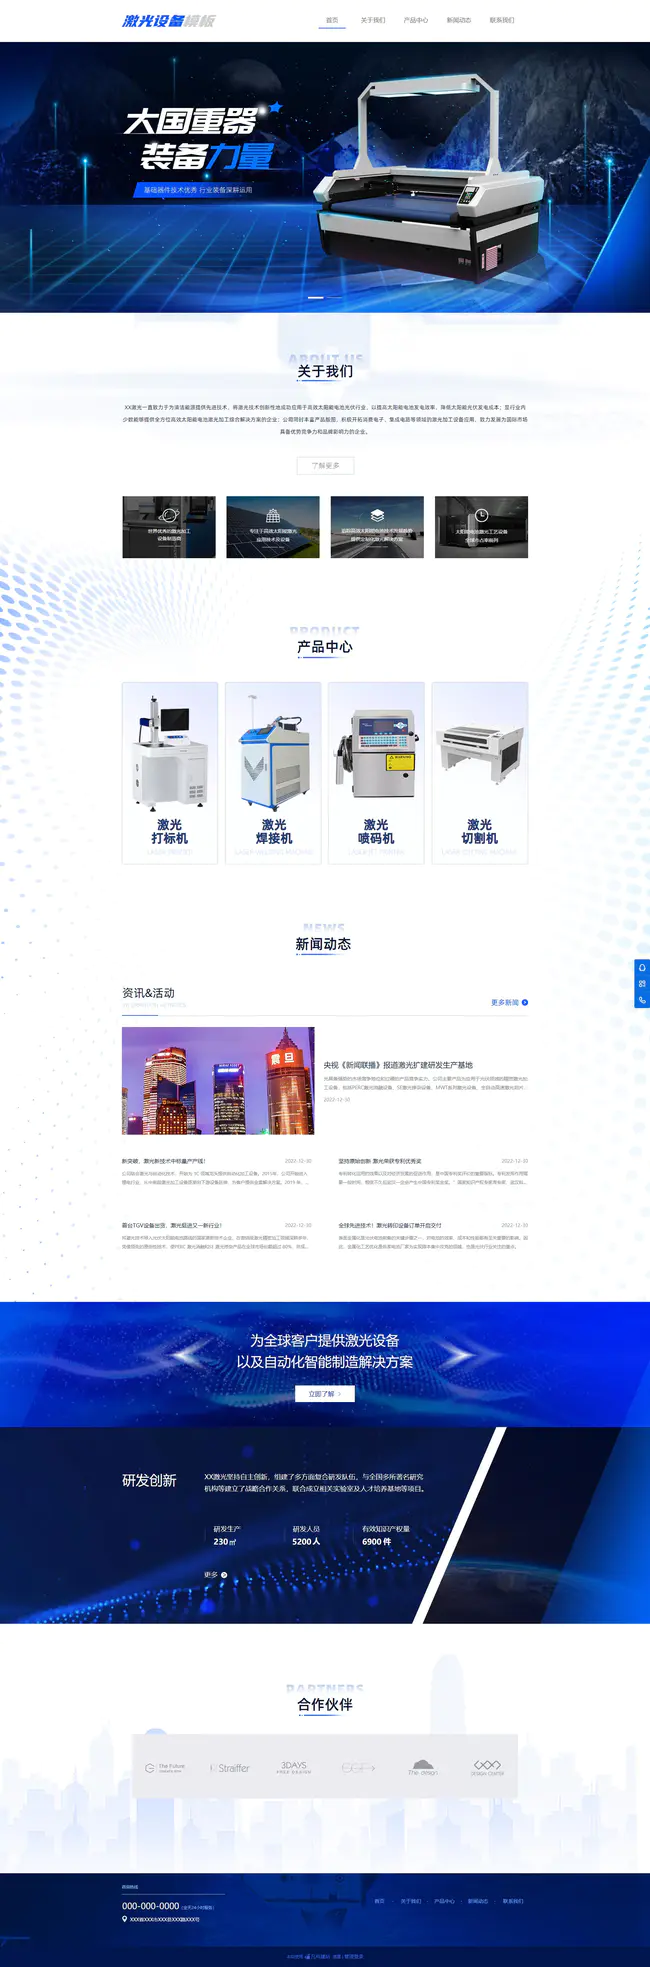 專業機械設備激光設備企業網站模板